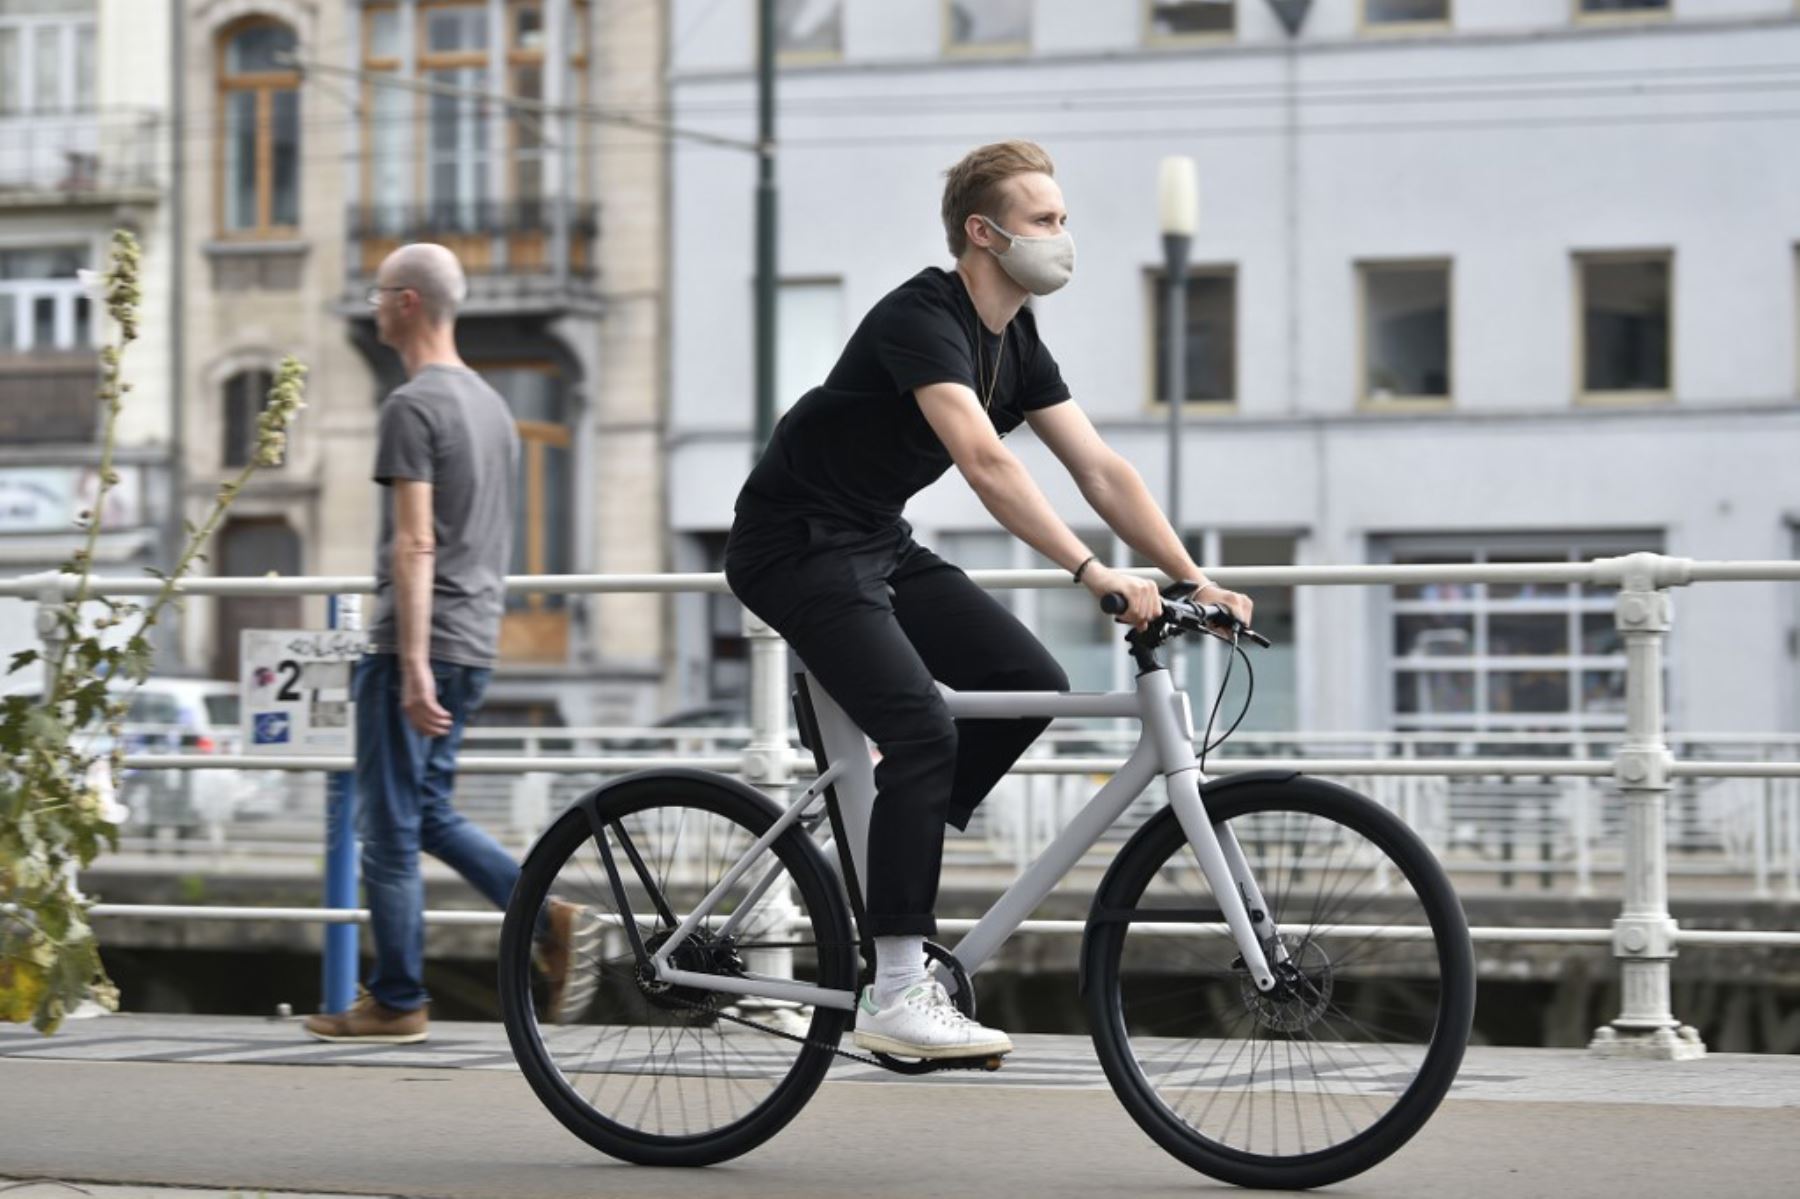 Una persona con máscara protectora, monta una bicicleta eléctrica  en las calles de Bruselas.

Foto: AFP